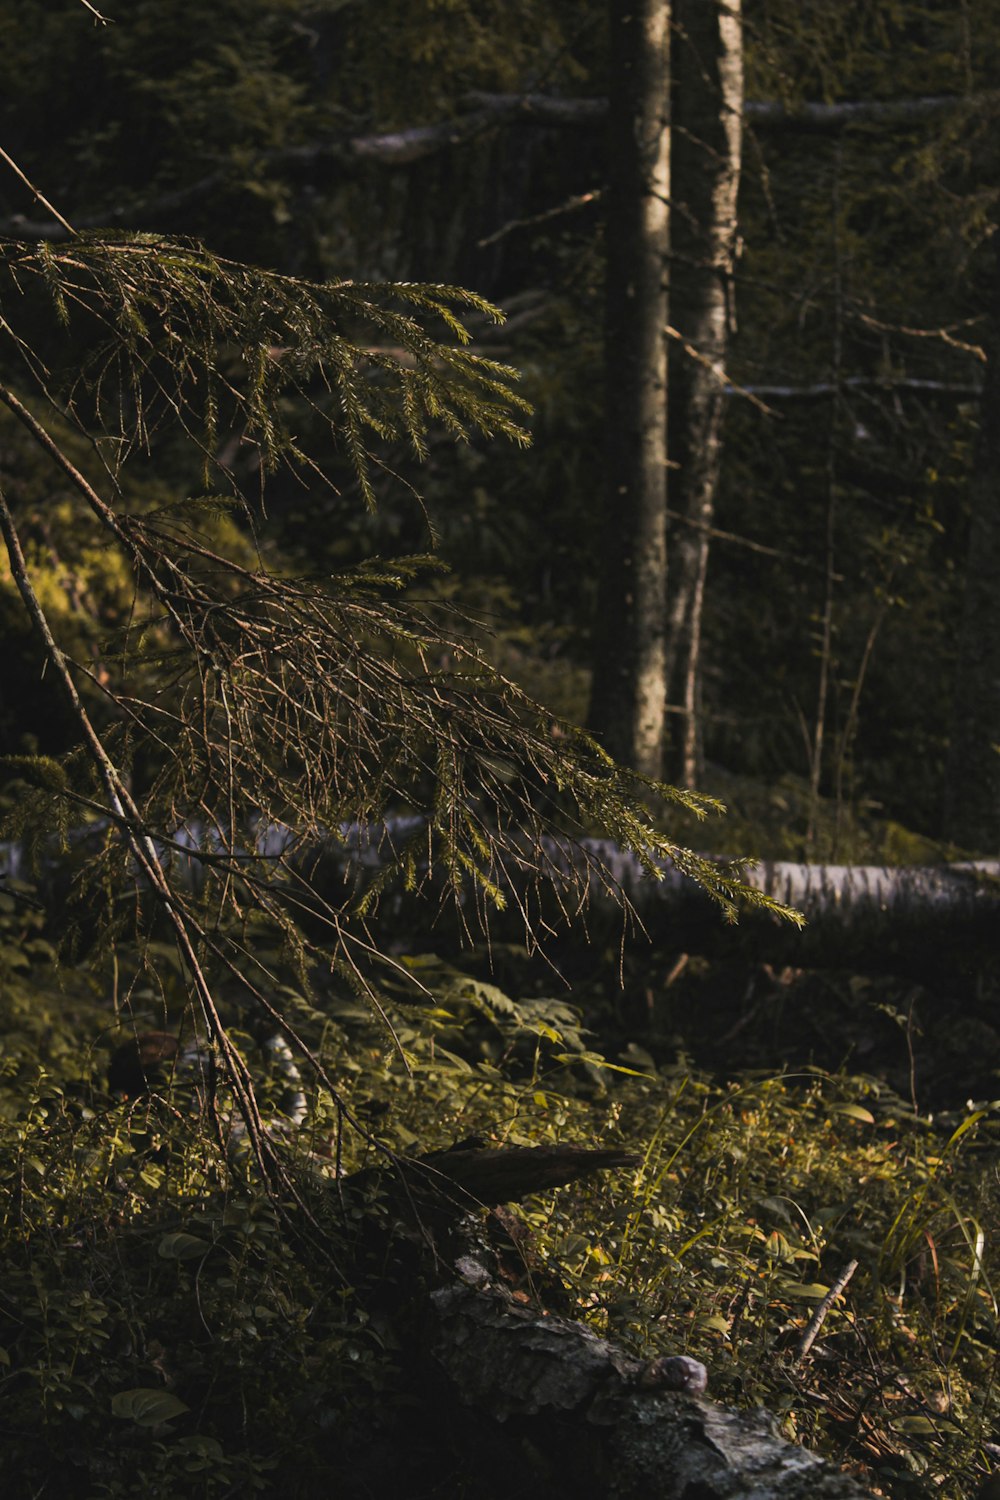 a bear is standing in the woods near a fallen tree